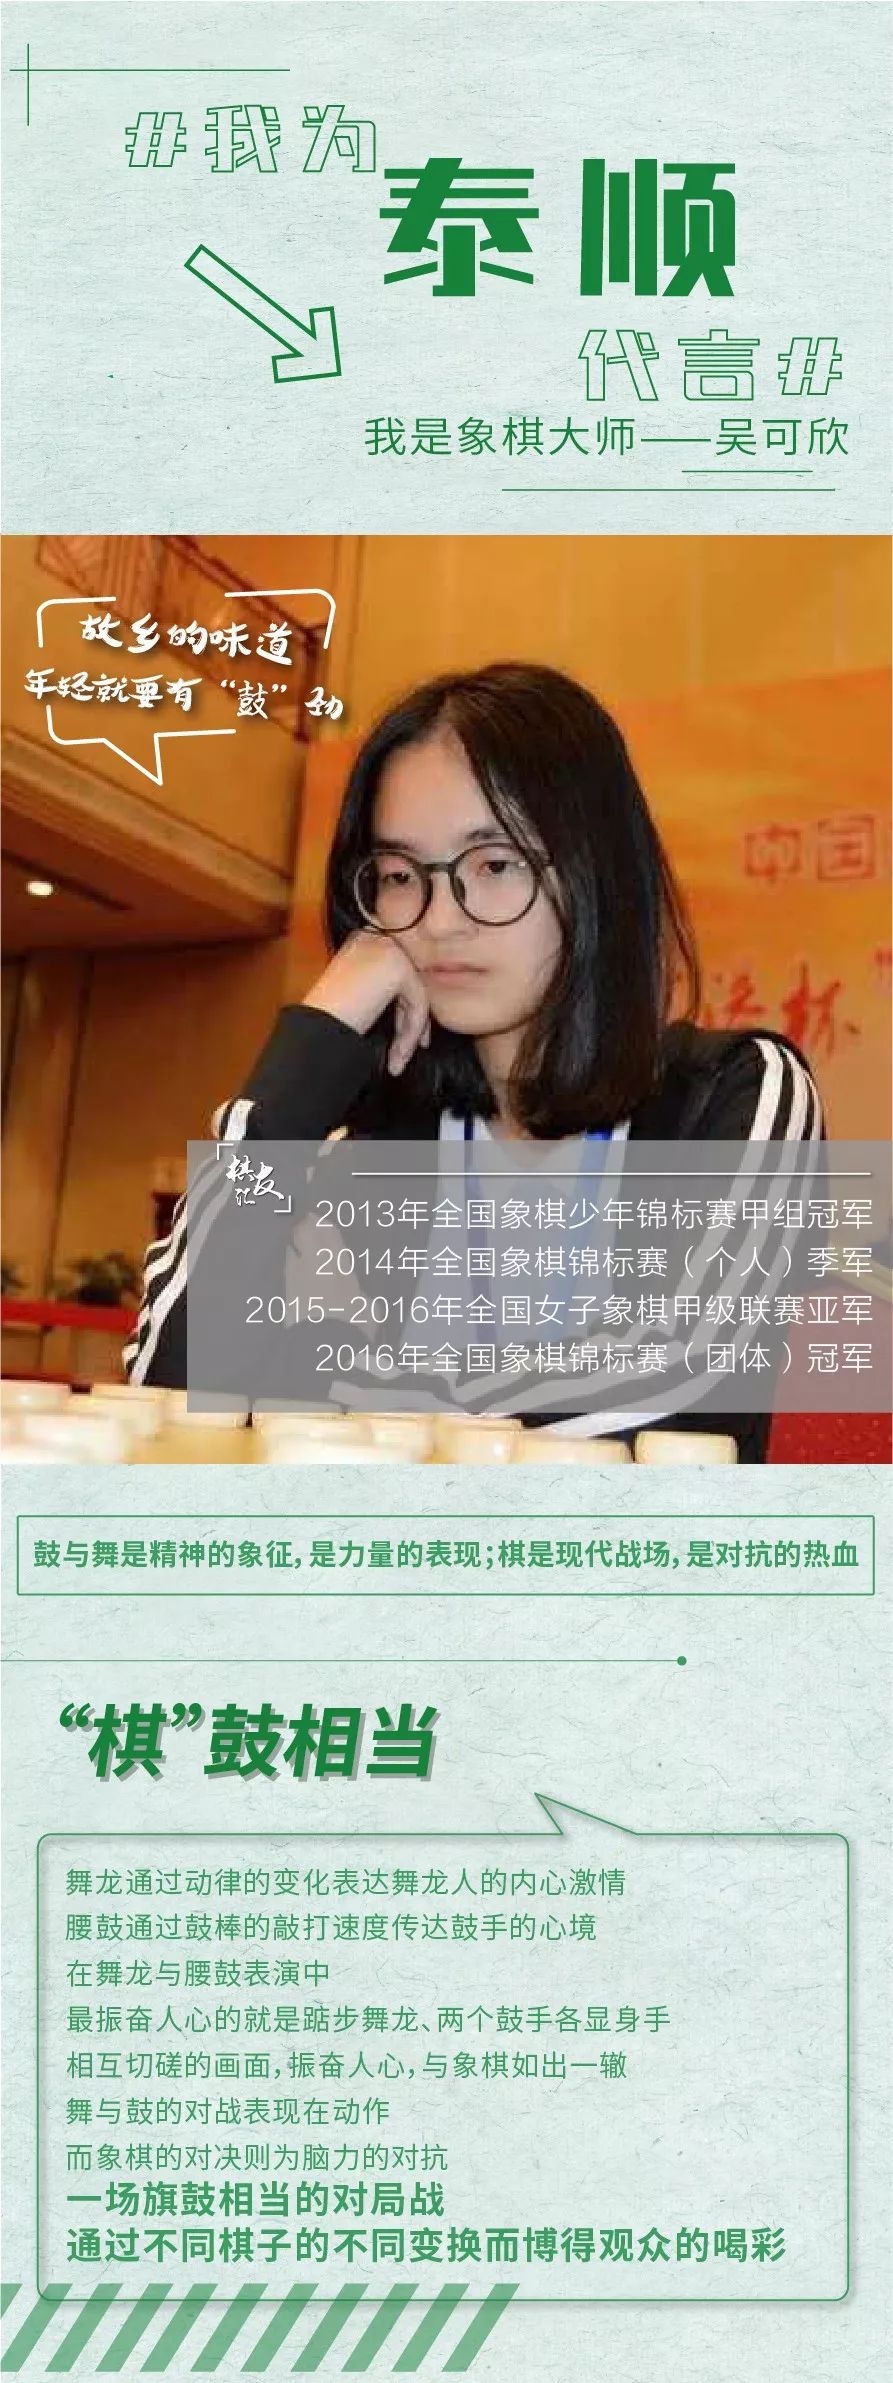 女子象棋大师吴可欣图片